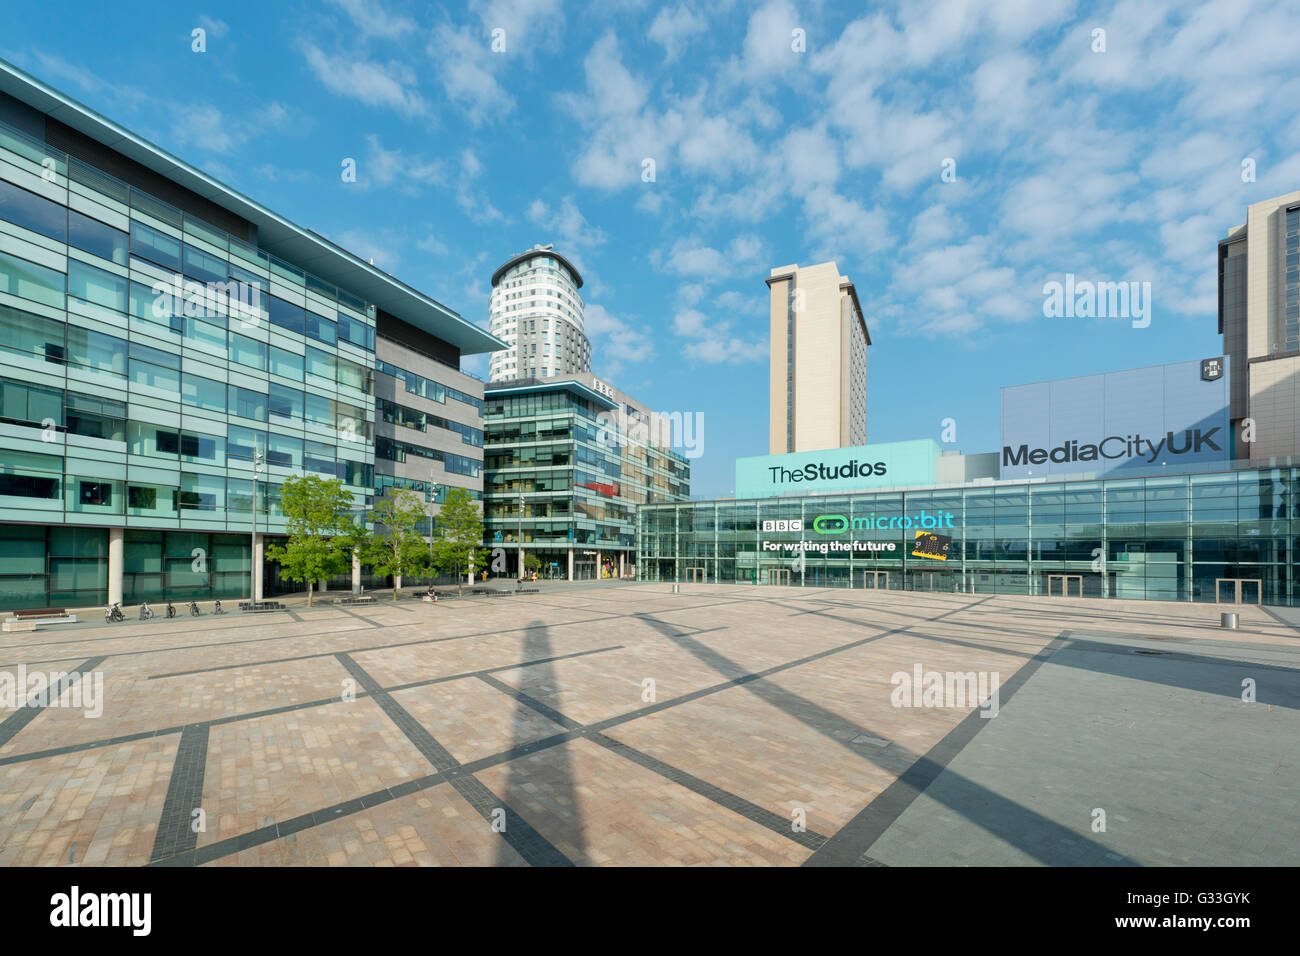 MediaCityUK, deren Mieter auflisten, die BBC, ITV, Granada, befindet sich in Greater Manchester Salford Quays. Stockfoto